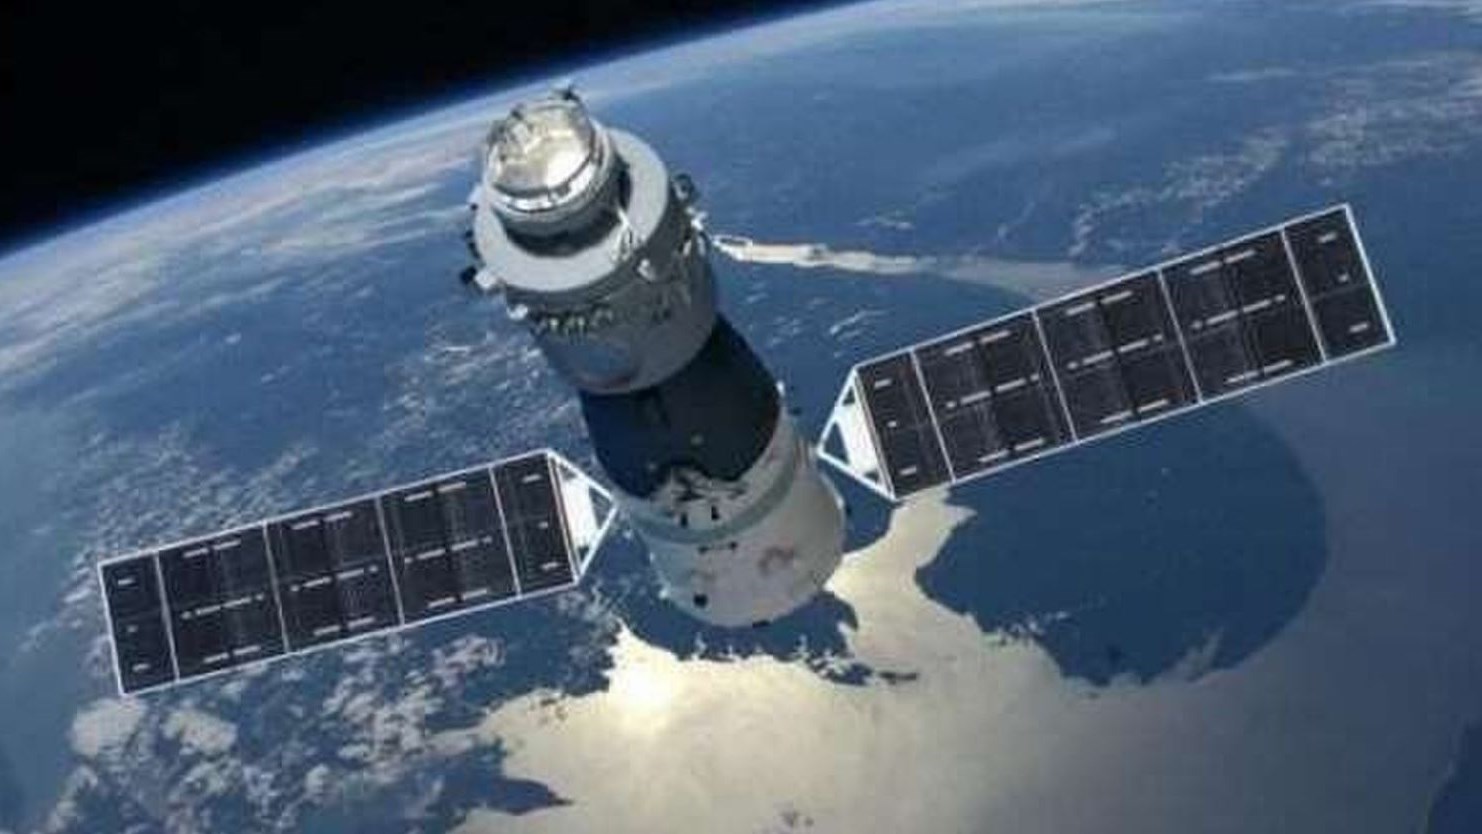 Πότε θα πέσει στη Γη ο κινεζικός διαστημικός σταθμός – Η Ελλάδα στη ζώνη πτώσης